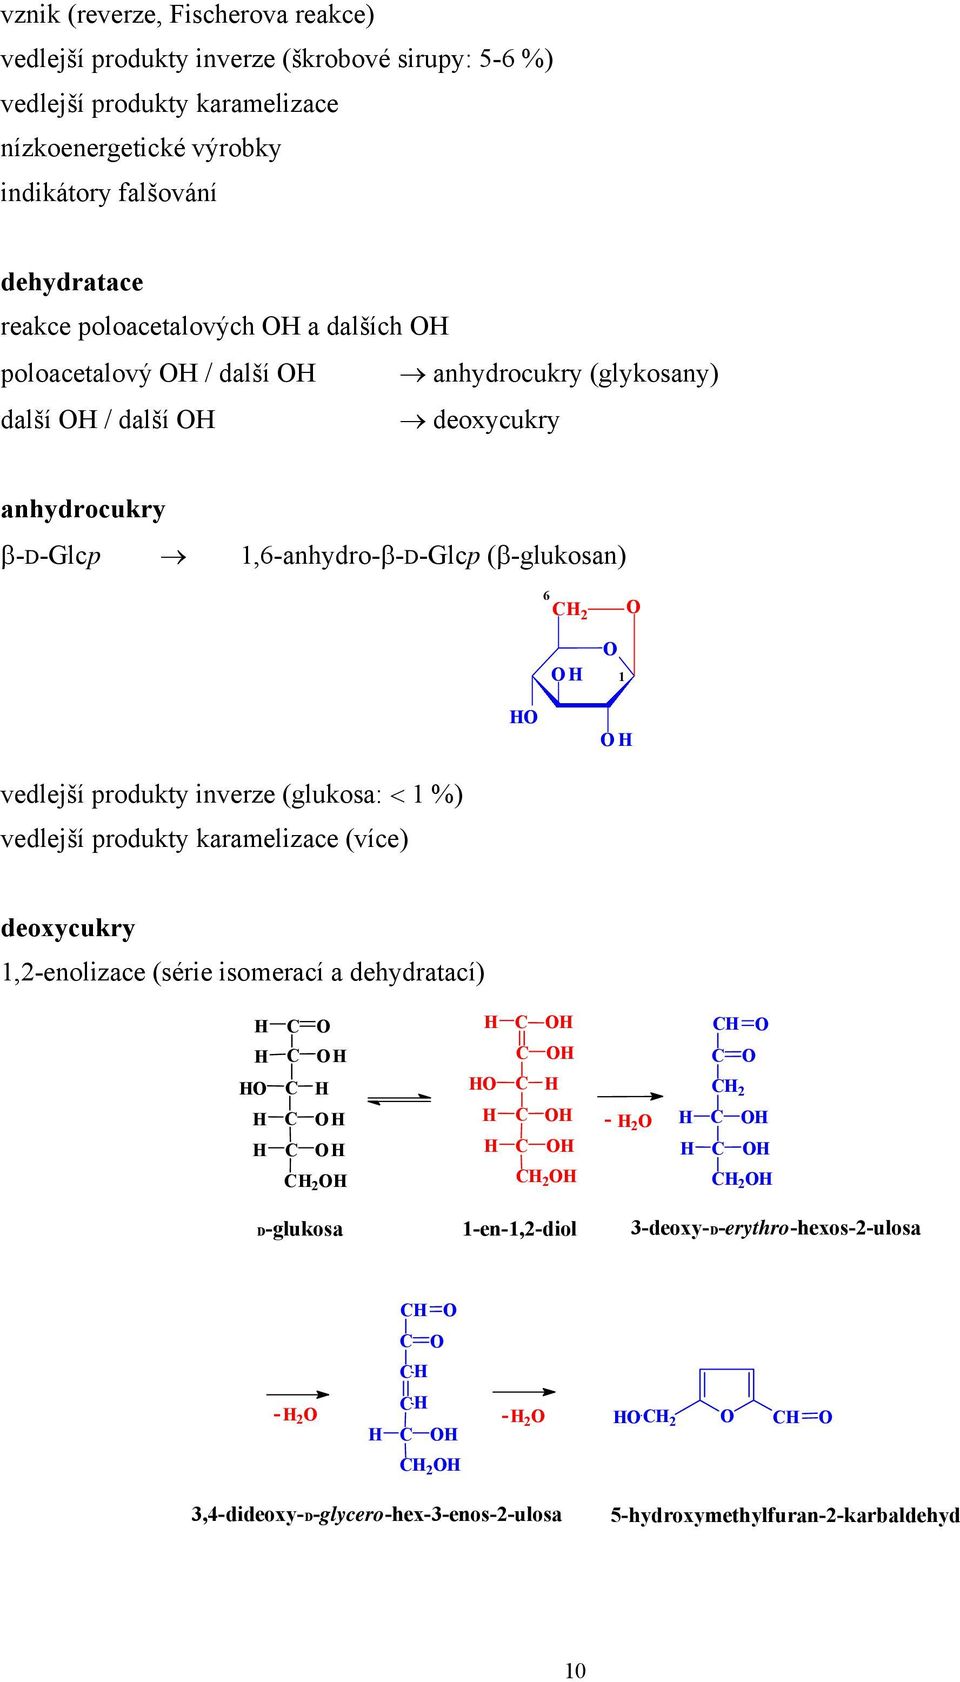 β-d-glcp,6-anhydro-β-d-glcp (β-glukosan) 6 vedlejší produkty inverze (glukosa: < %) vedlejší produkty karamelizace (více) deoxycukry,-enolizace (série